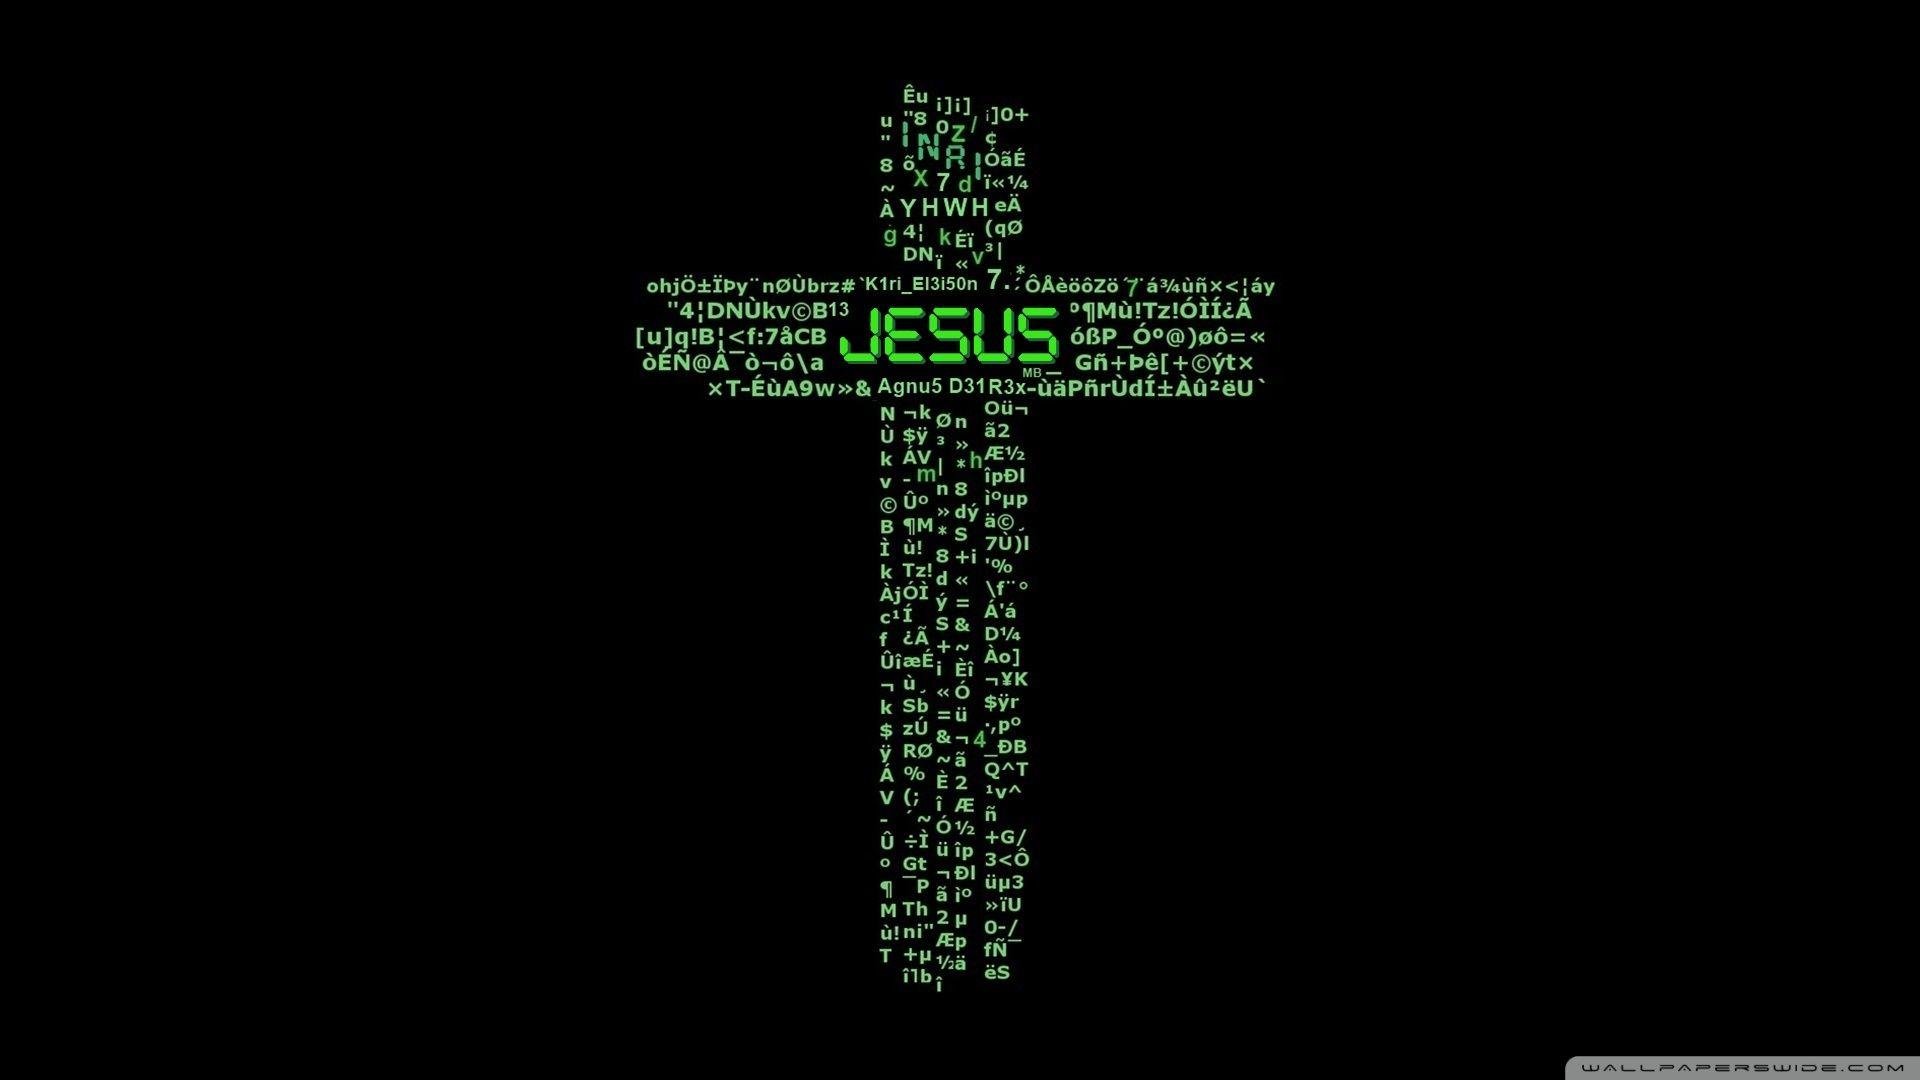 Jesus Cross Wallpapers Top Free Jesus Cross Backgrounds Wallpaperaccess